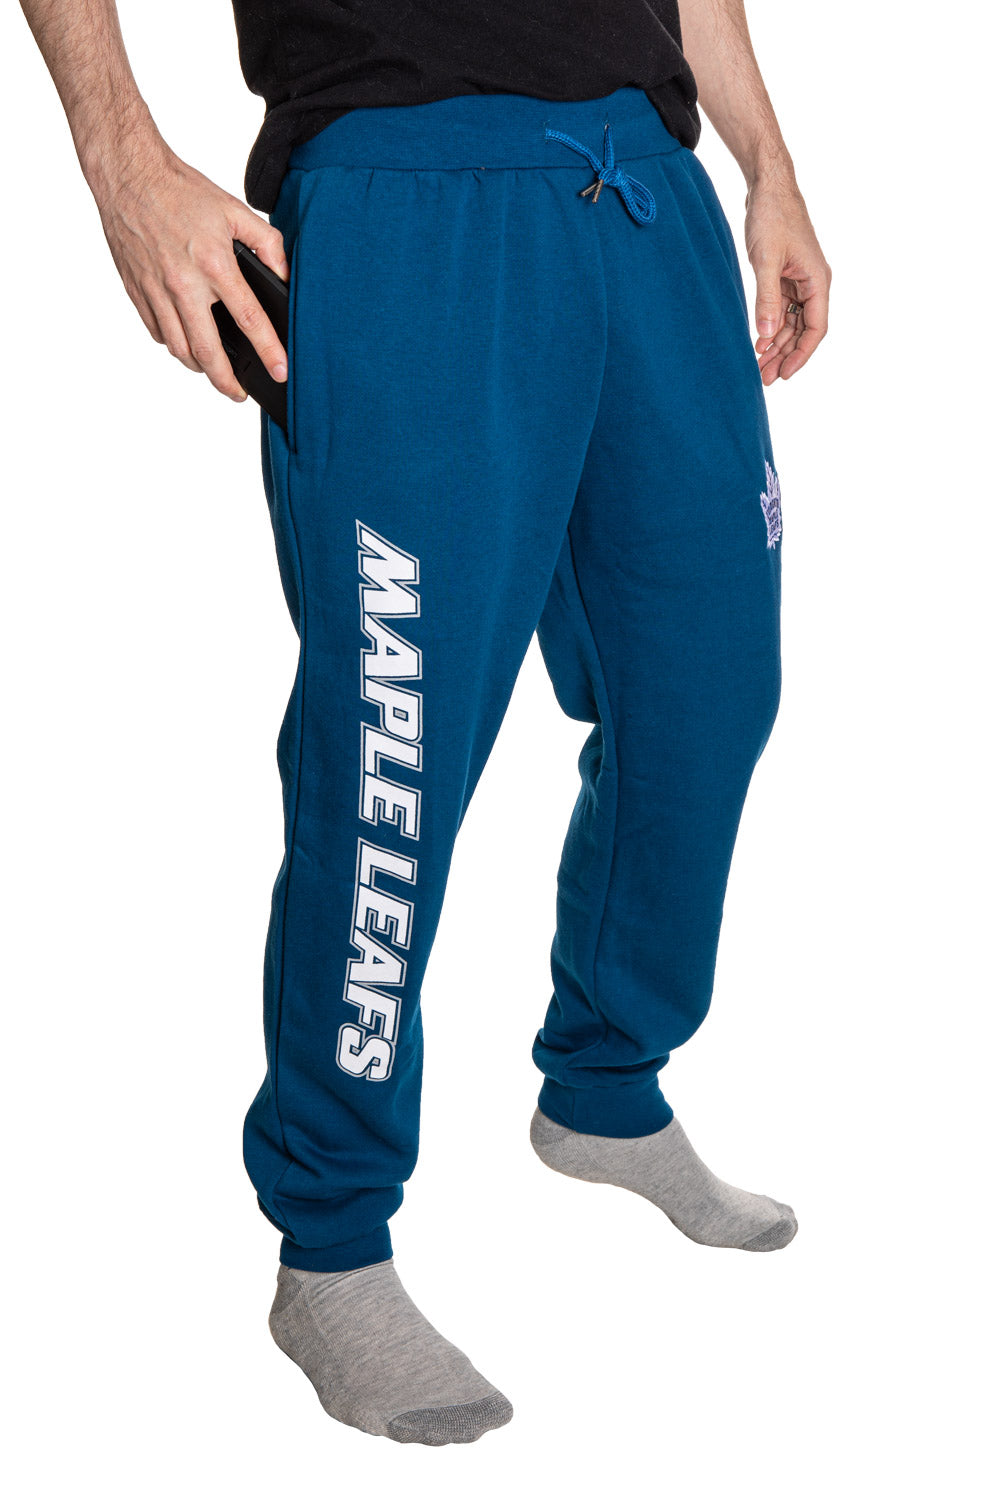 Toronto Maple Leafs Pants, Maple Leafs Sweatpants, Leggings, Yoga Pants,  Joggers